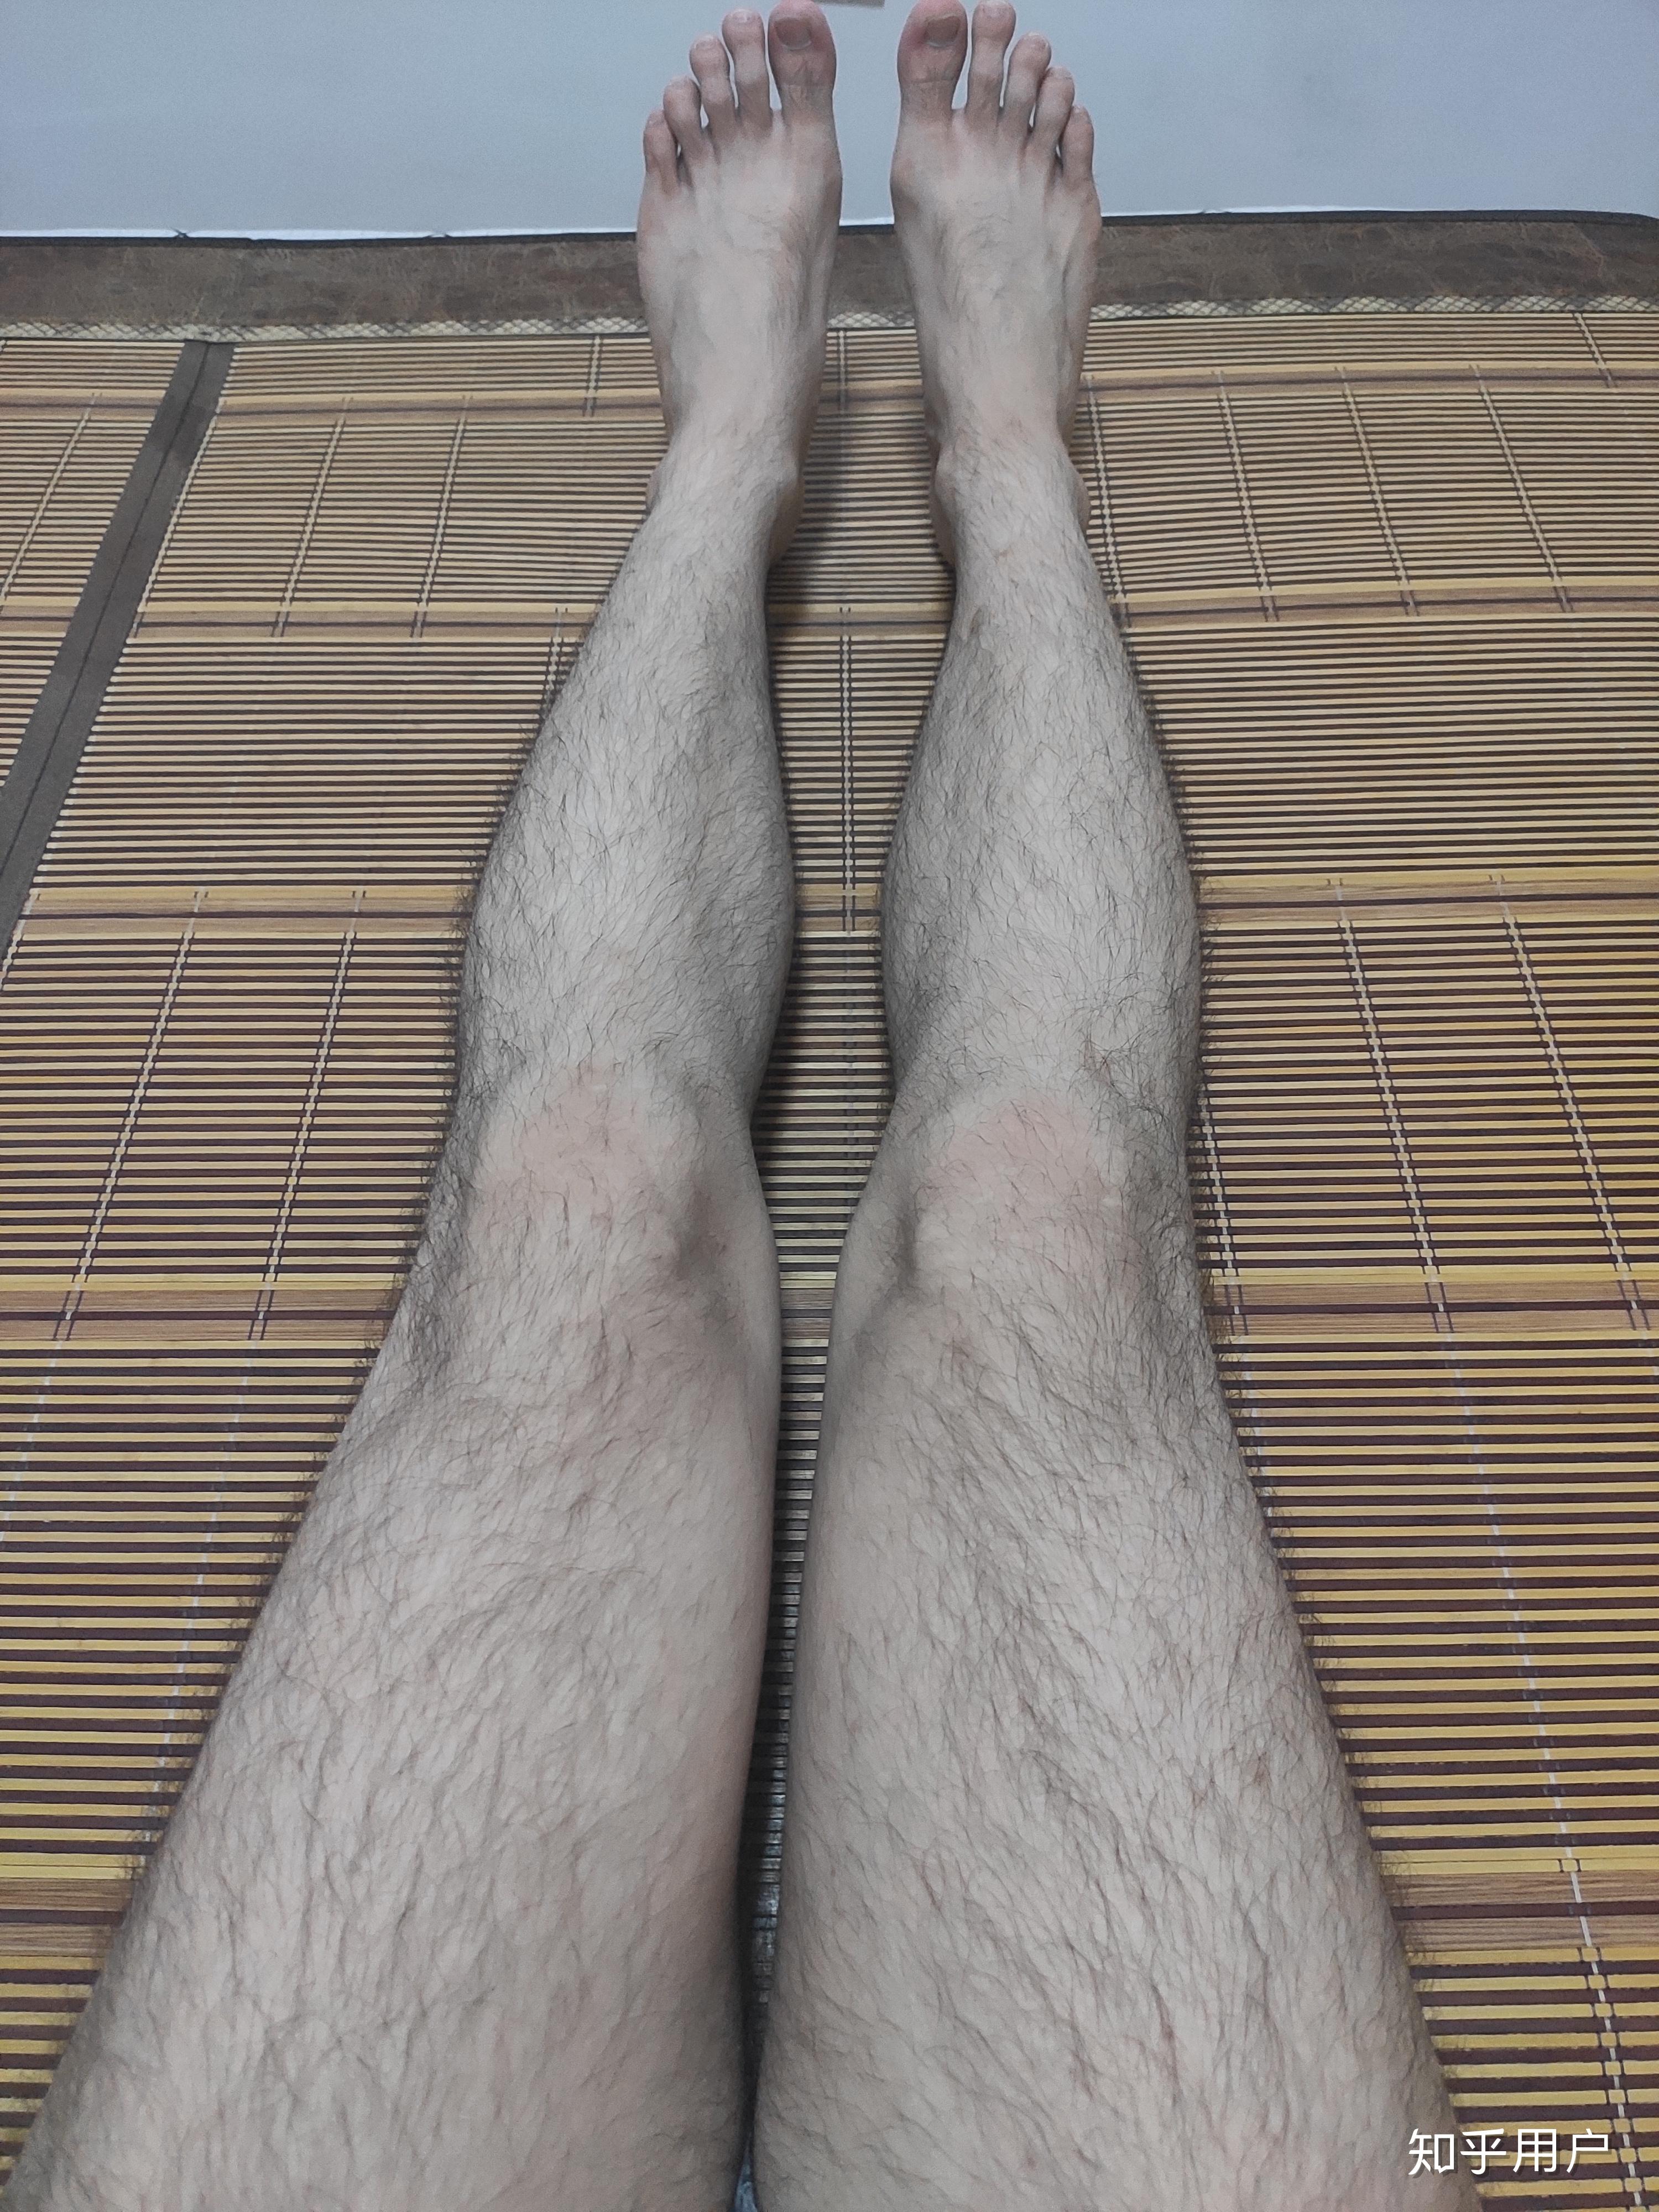 男人大腿腿毛图片